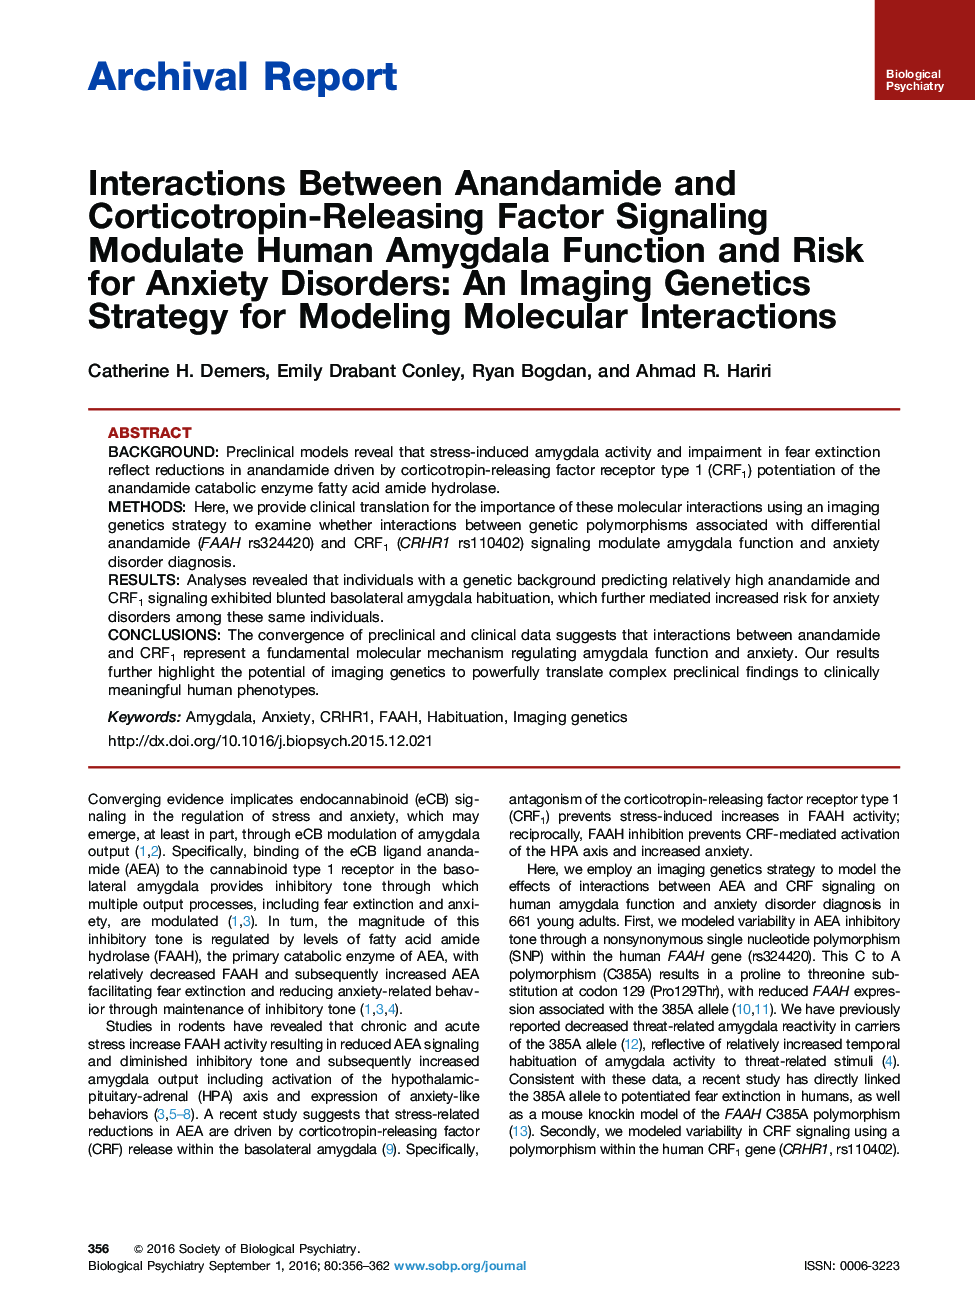 تعاملات بین آناندامید و کورتیکوتروپین-انتشار فاکتورهای سیگنالینگ، تابع رفتار انسانی و خطر اختلالات اضطرابی: یک استراتژی ژنتیک تصویربرداری برای مدل سازی واکنش های مولکولی 